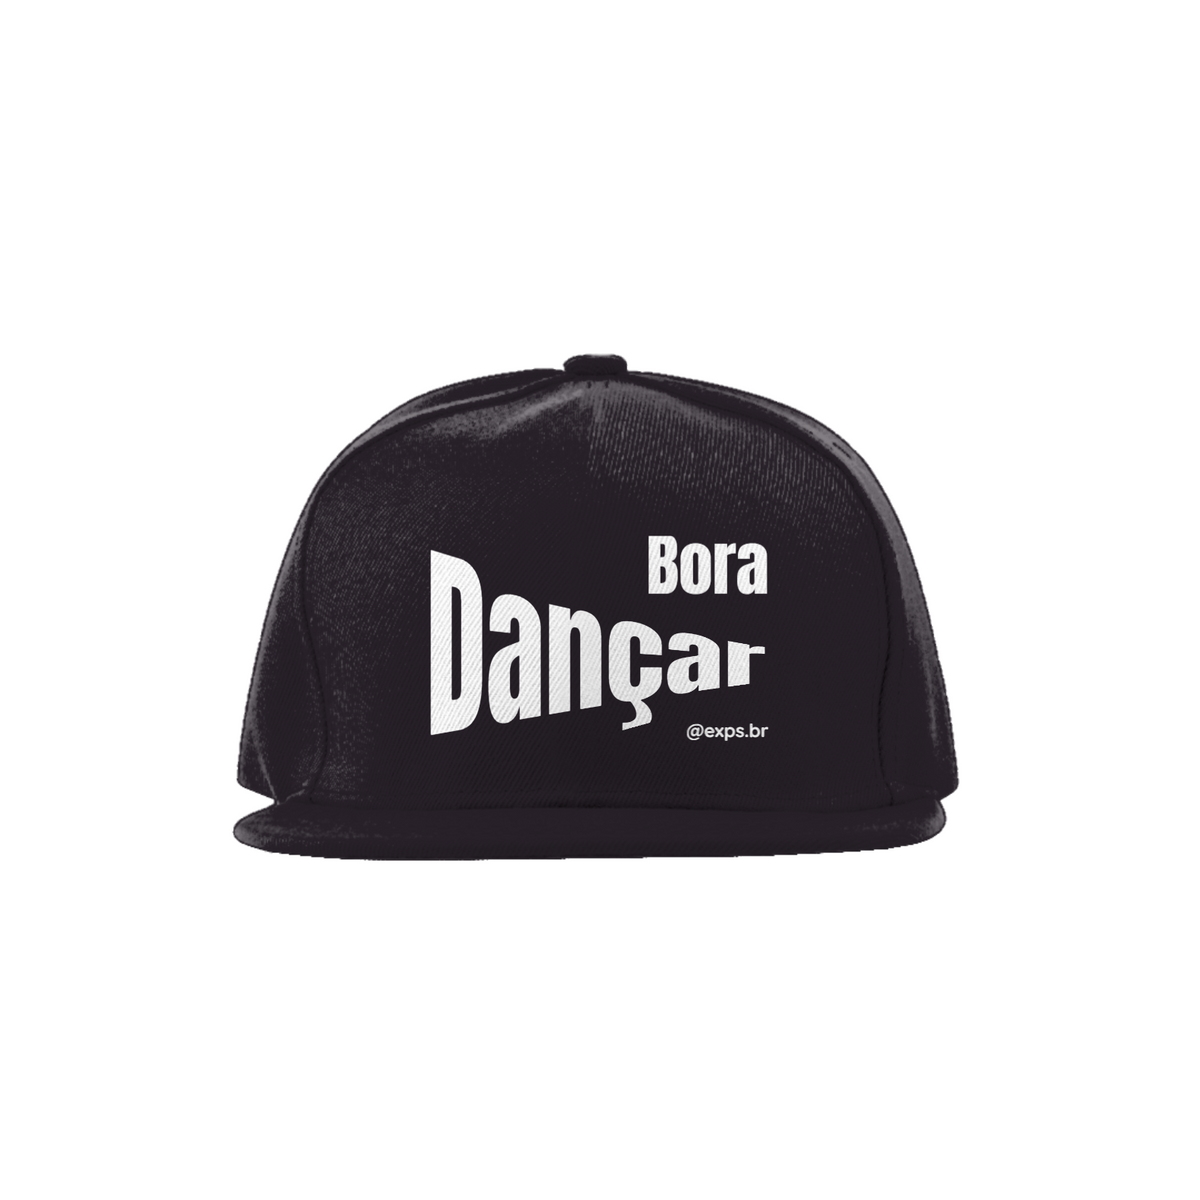 Nome do produto: Boné - Bora Dançar - cores escuras - linha Quality (B0016-B)